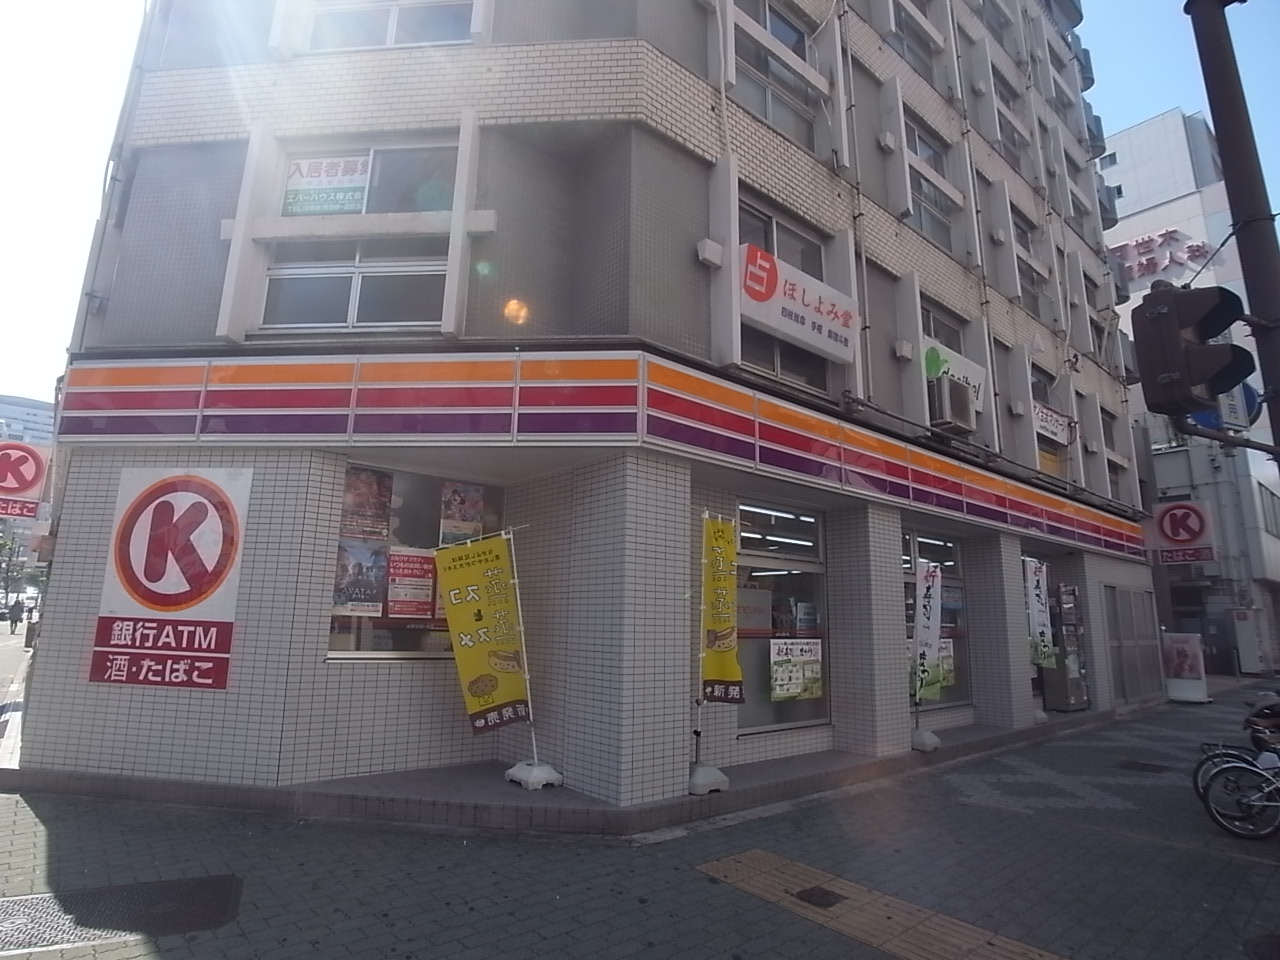 Convenience store. 80m to Circle K Sakae Takehira through store (convenience store)